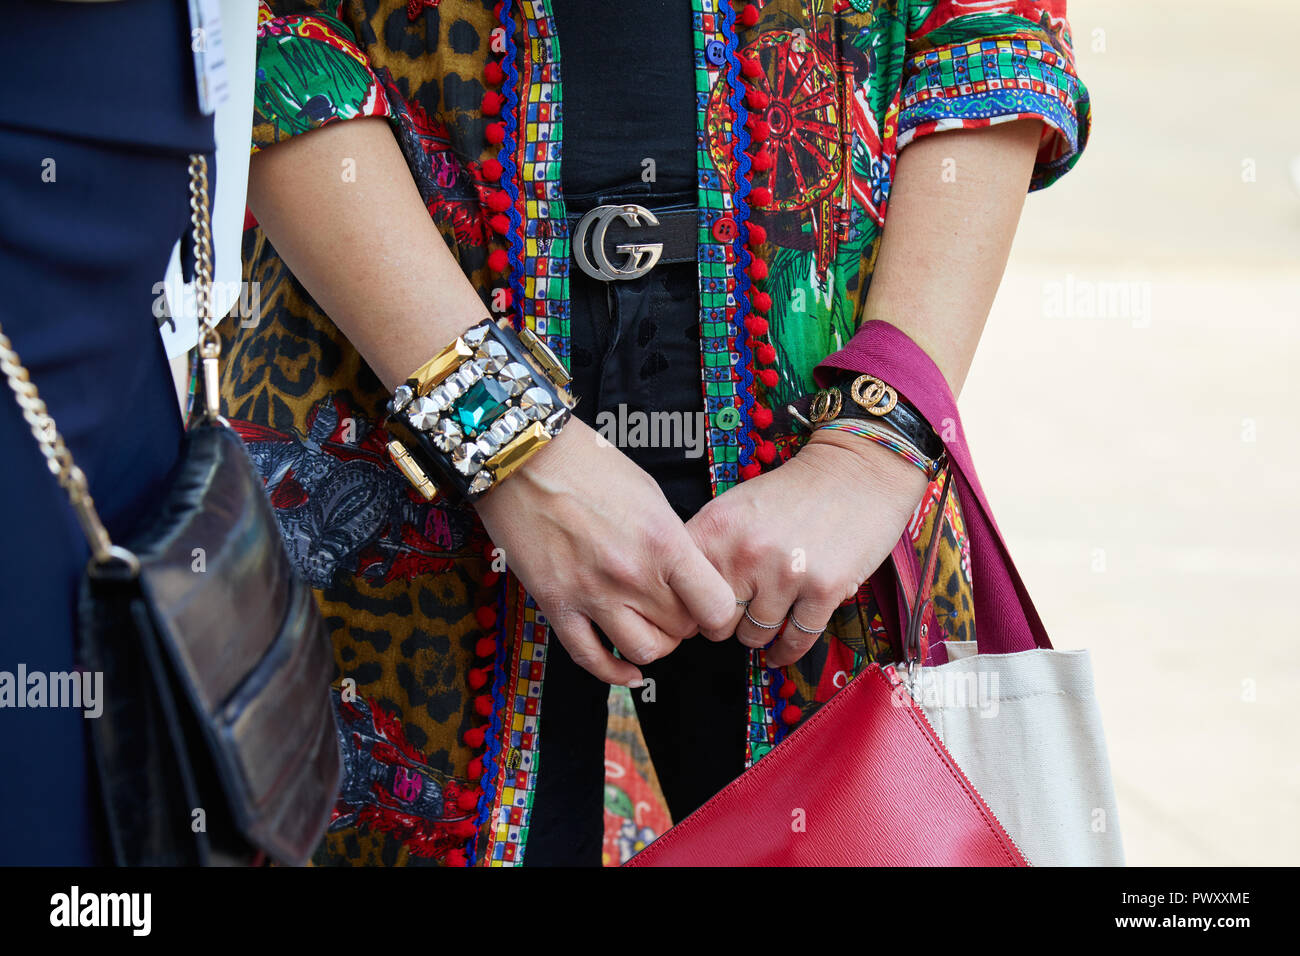 Milano, Italia - 21 settembre 2018: Donna con nastro Gucci, camicia colorata e gioiello bracciale prima Calcaterra fashion show, la Settimana della Moda Milanese street Foto Stock